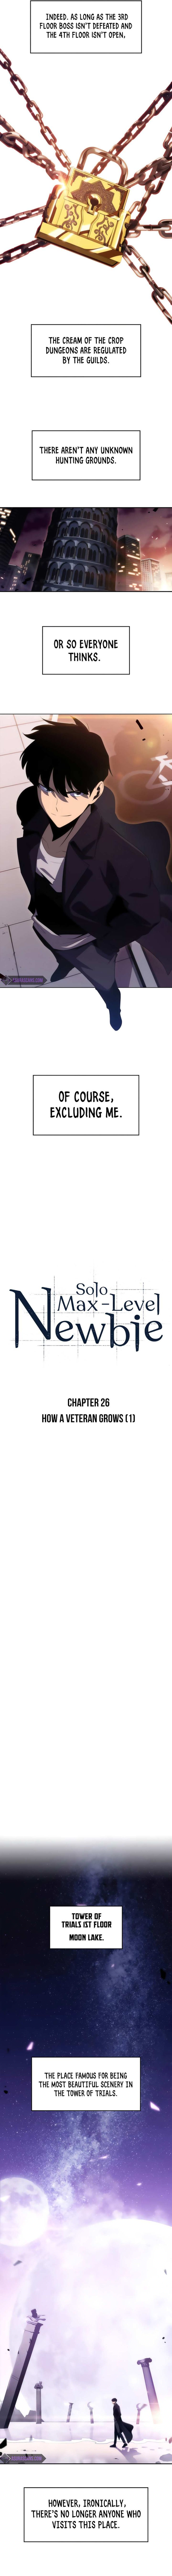 Solo Max Level Newbie 26 4